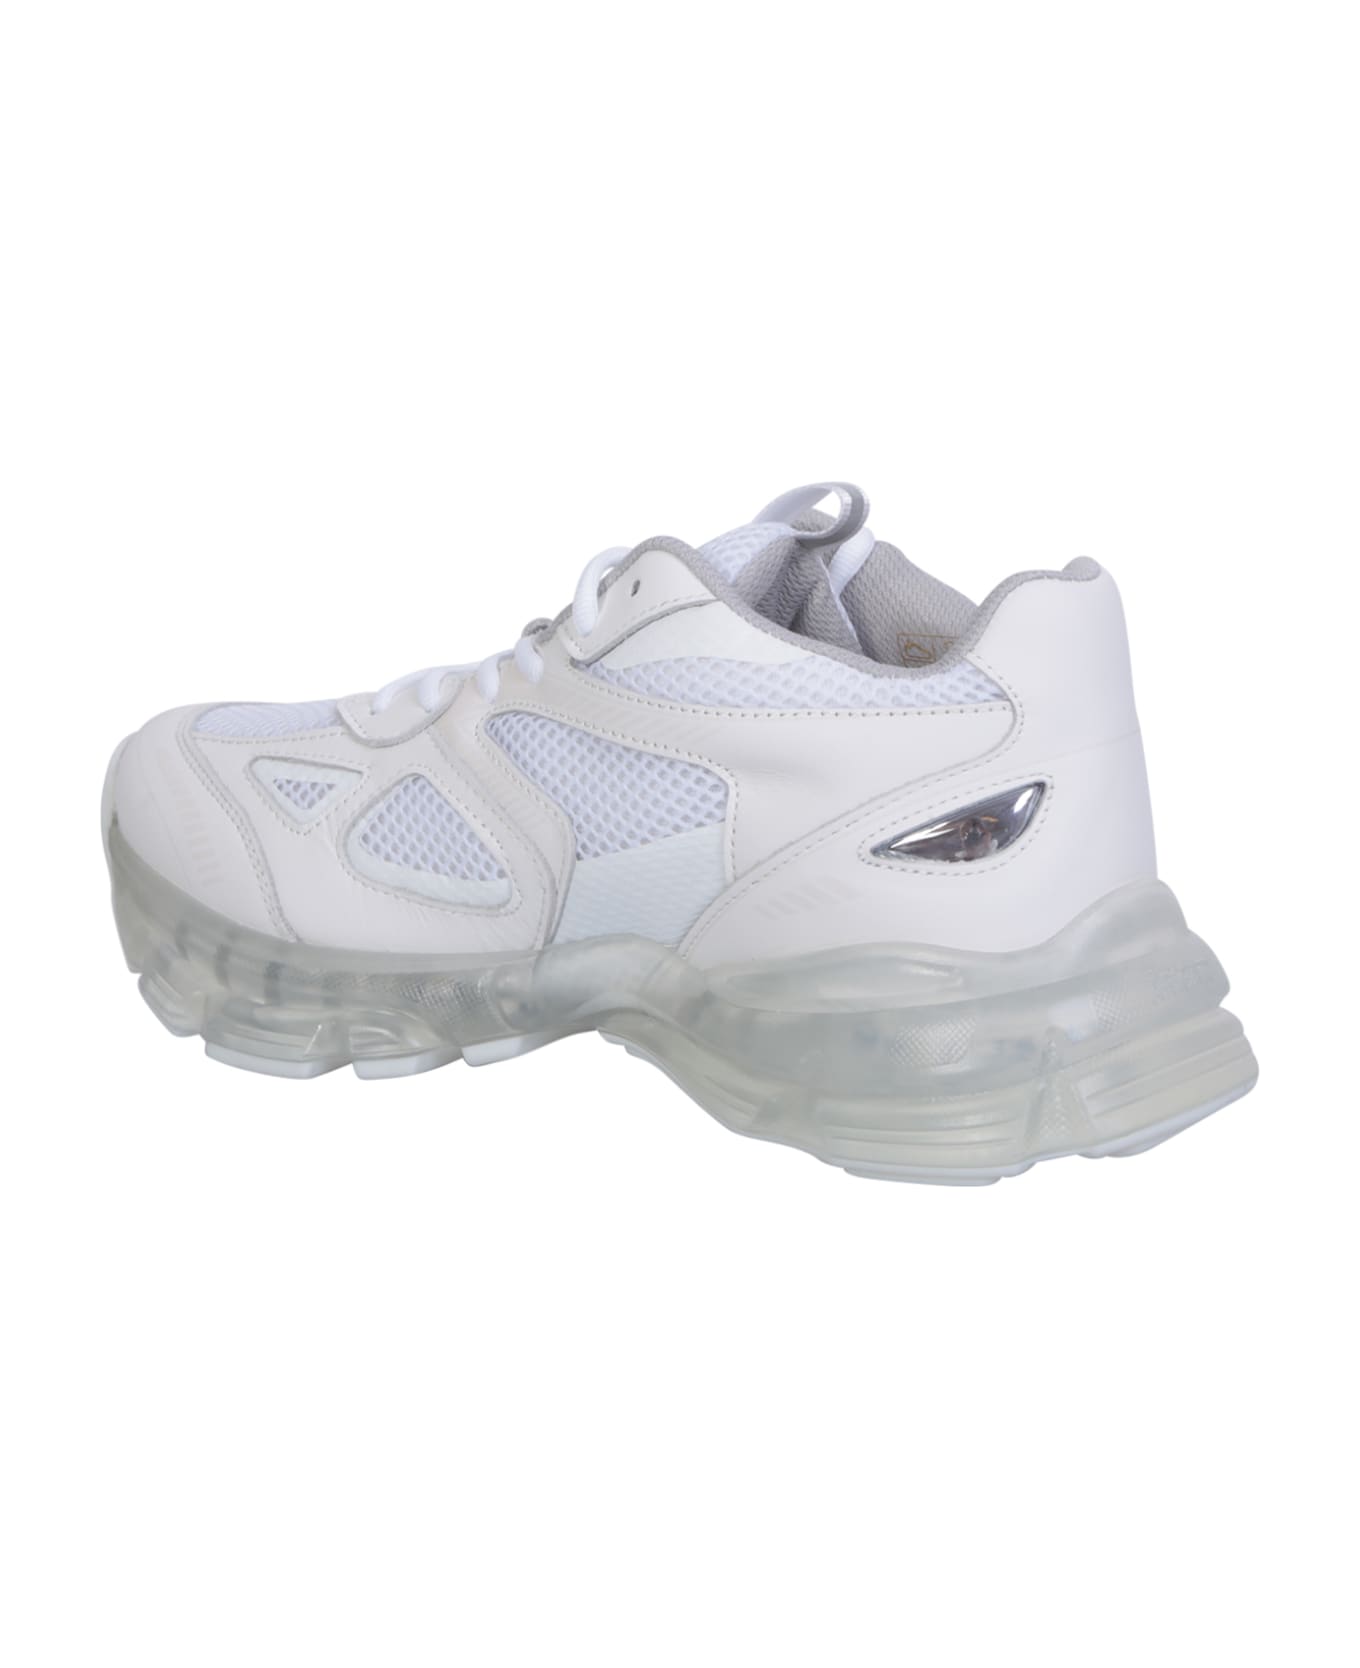 Axel Arigato 'marathon' Sneakers - White